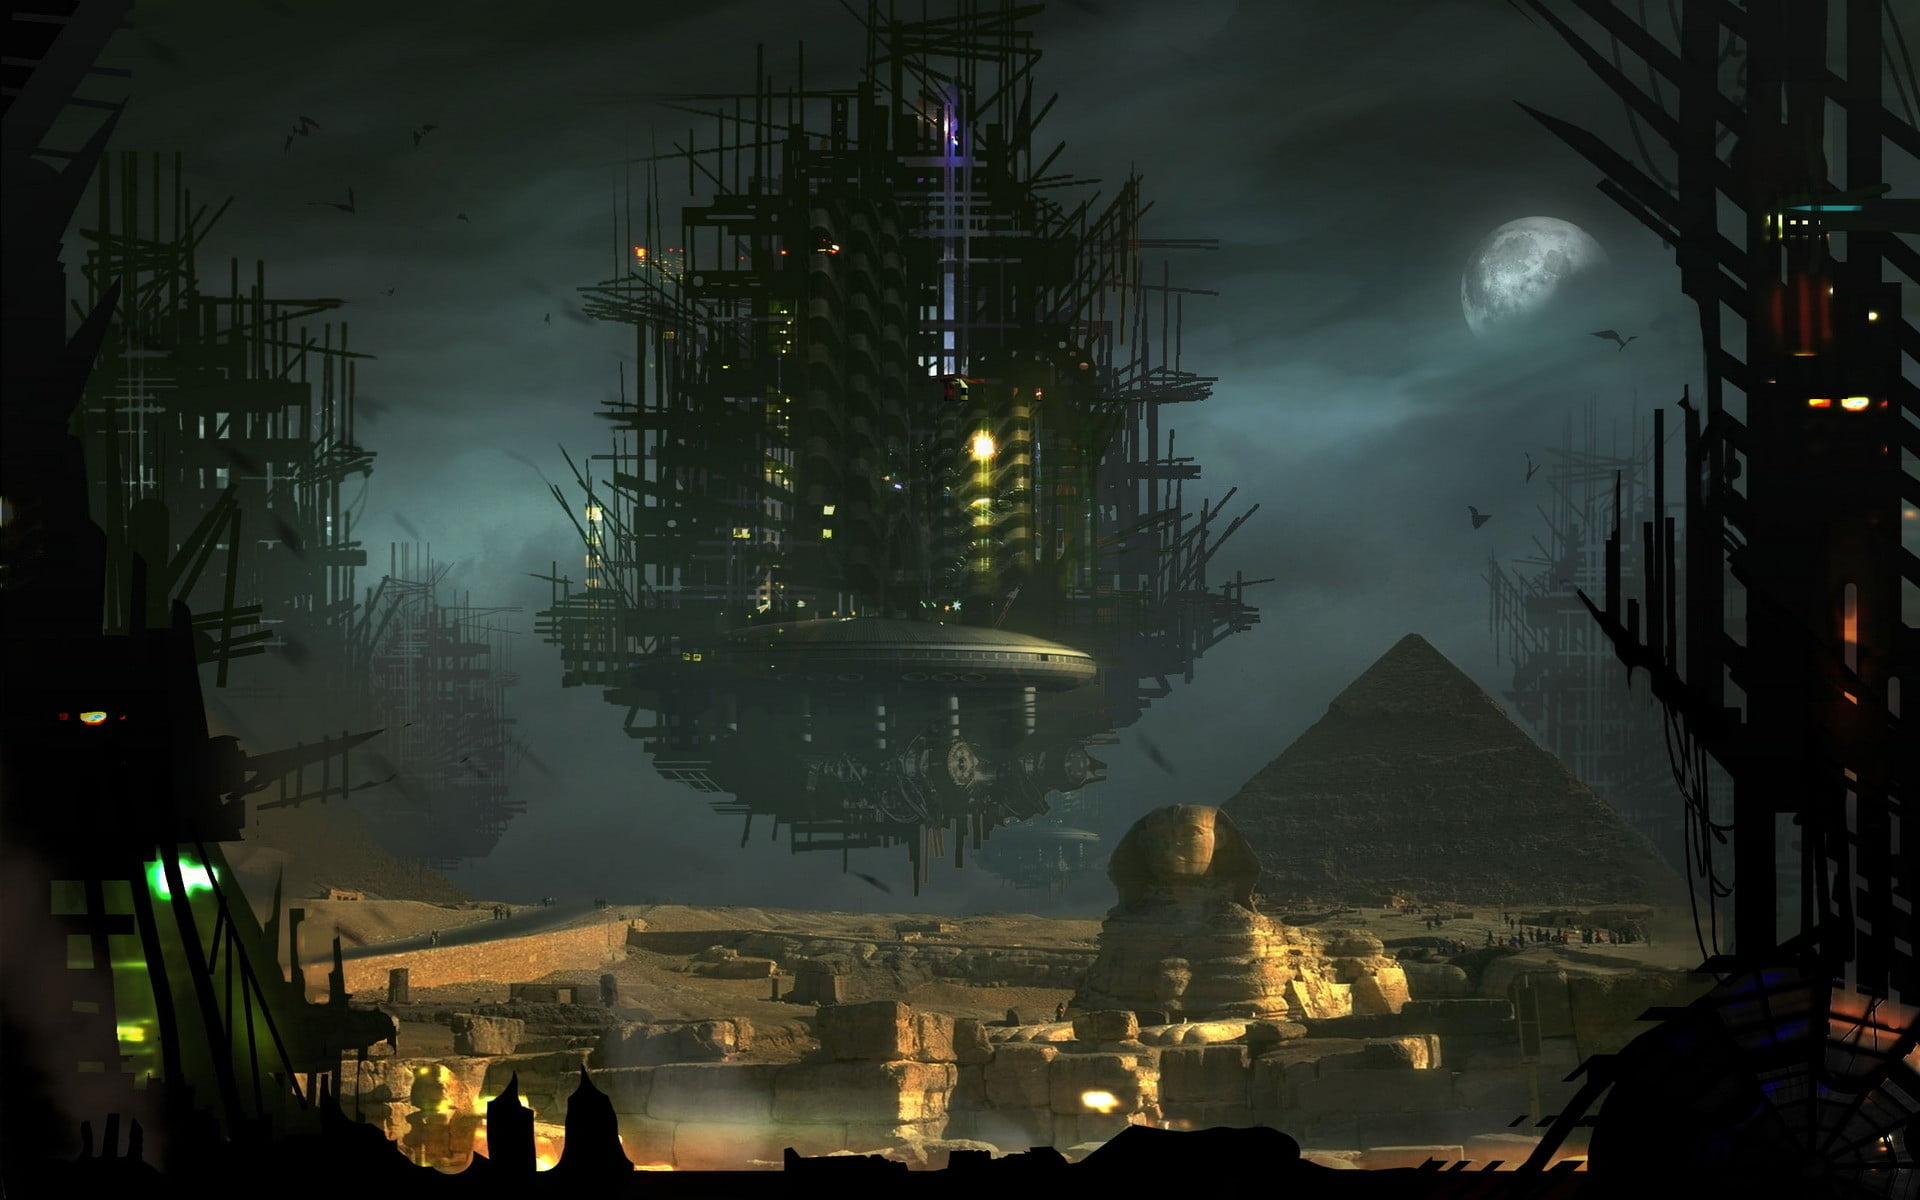 black floating building near sphinx digital wallpaper, Egypt, Gods of Egypt